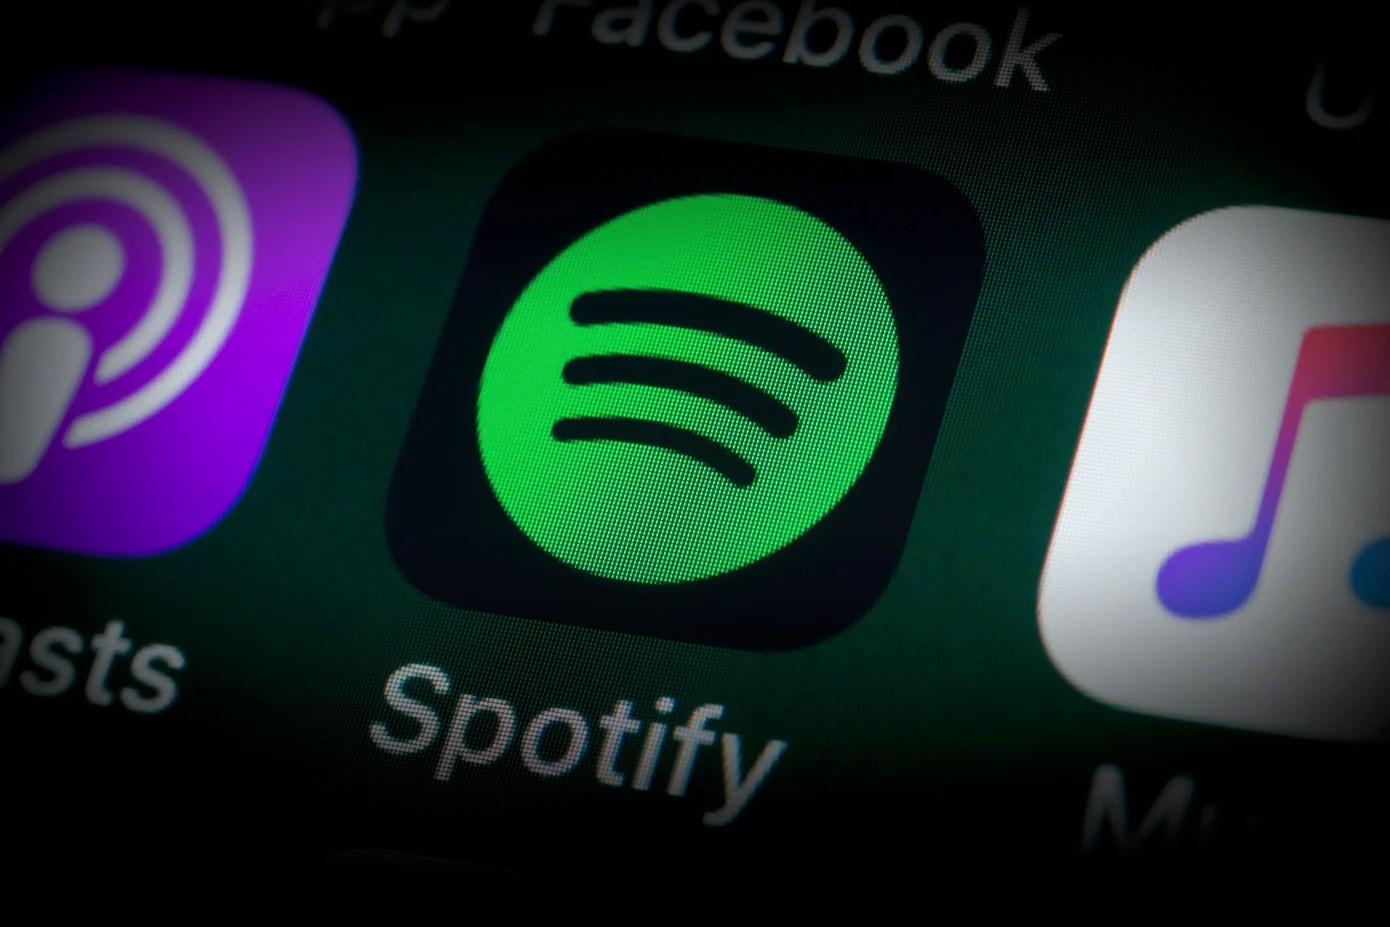 Play Store : vous pourrez vous abonner à Spotify sans passer par le paiement de Google